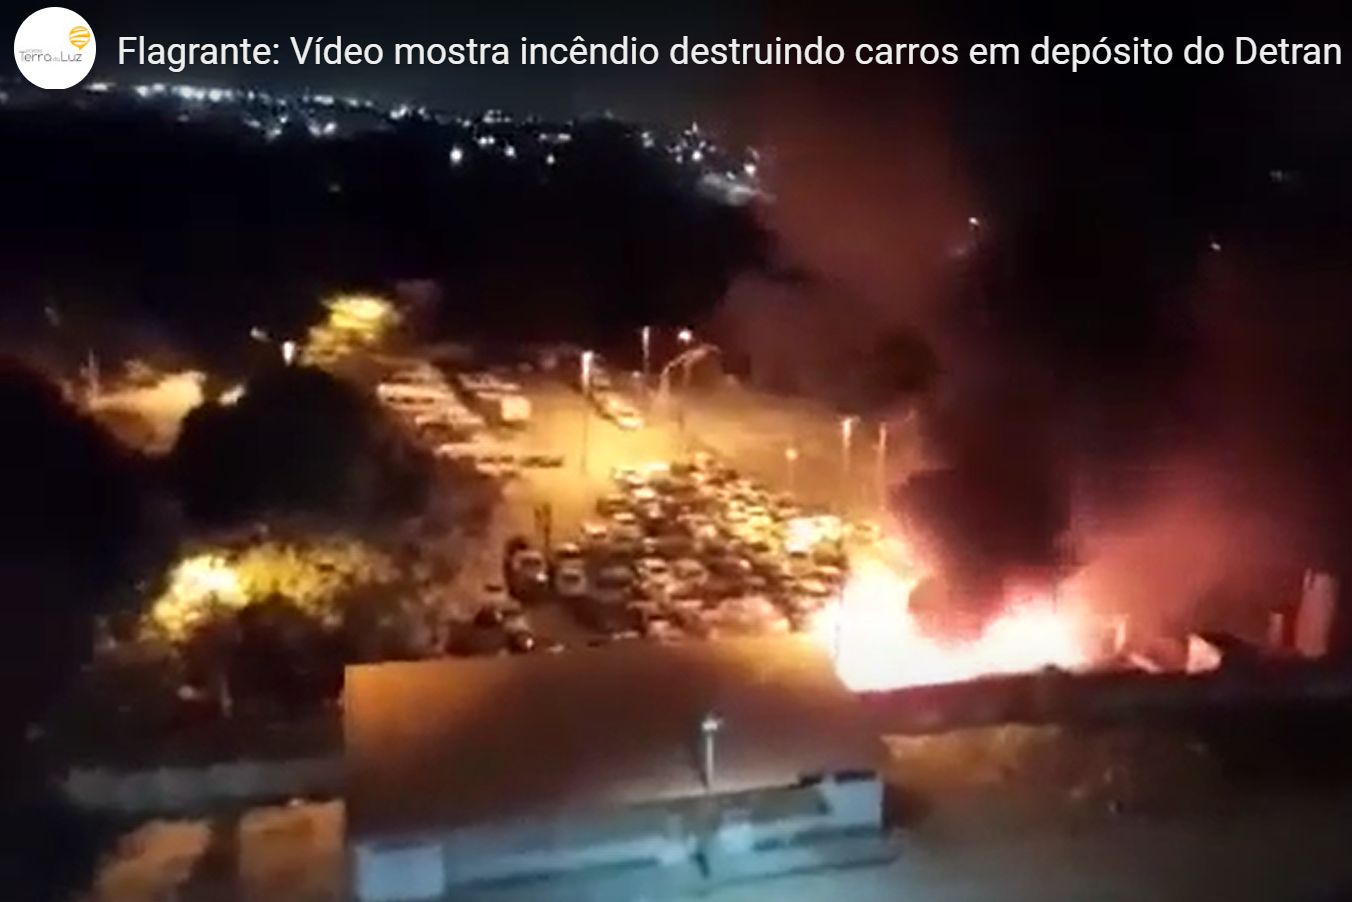 Flagrante: Vídeo mostra incêndio destruindo carros em depósito do Detran em Fortaleza